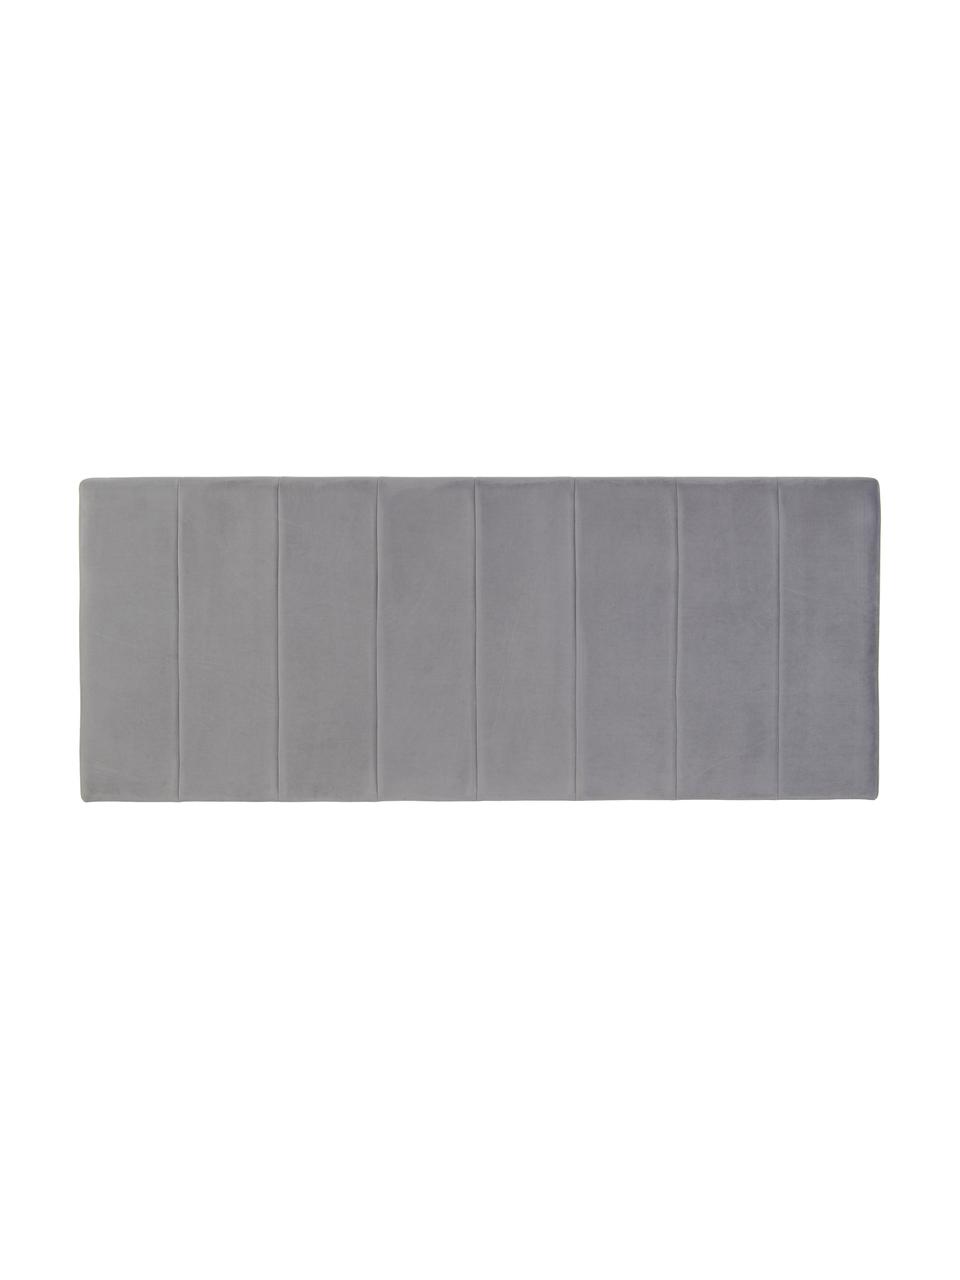 Gestoffeerd fluwelen hoofdeinde Adrio in grijs, Bekleding: 100% polyester fluweel, Frame: hout, metaal, Fluweel grijs, B 160 cm x H 64 cm